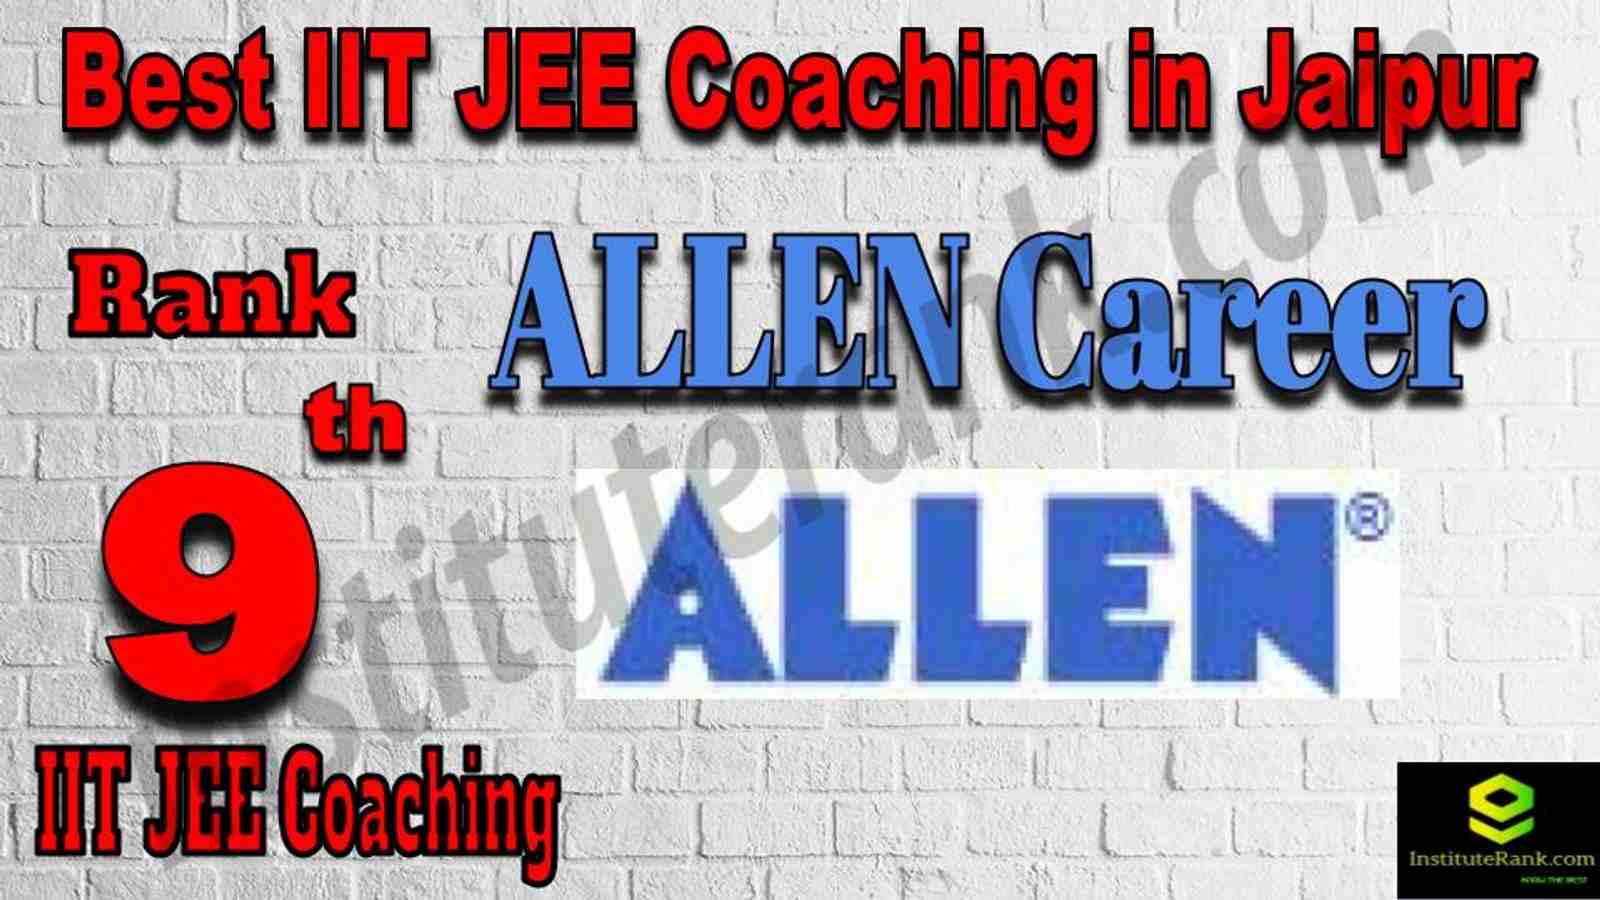 9th Best IIT JEE Coaching in Jaipur